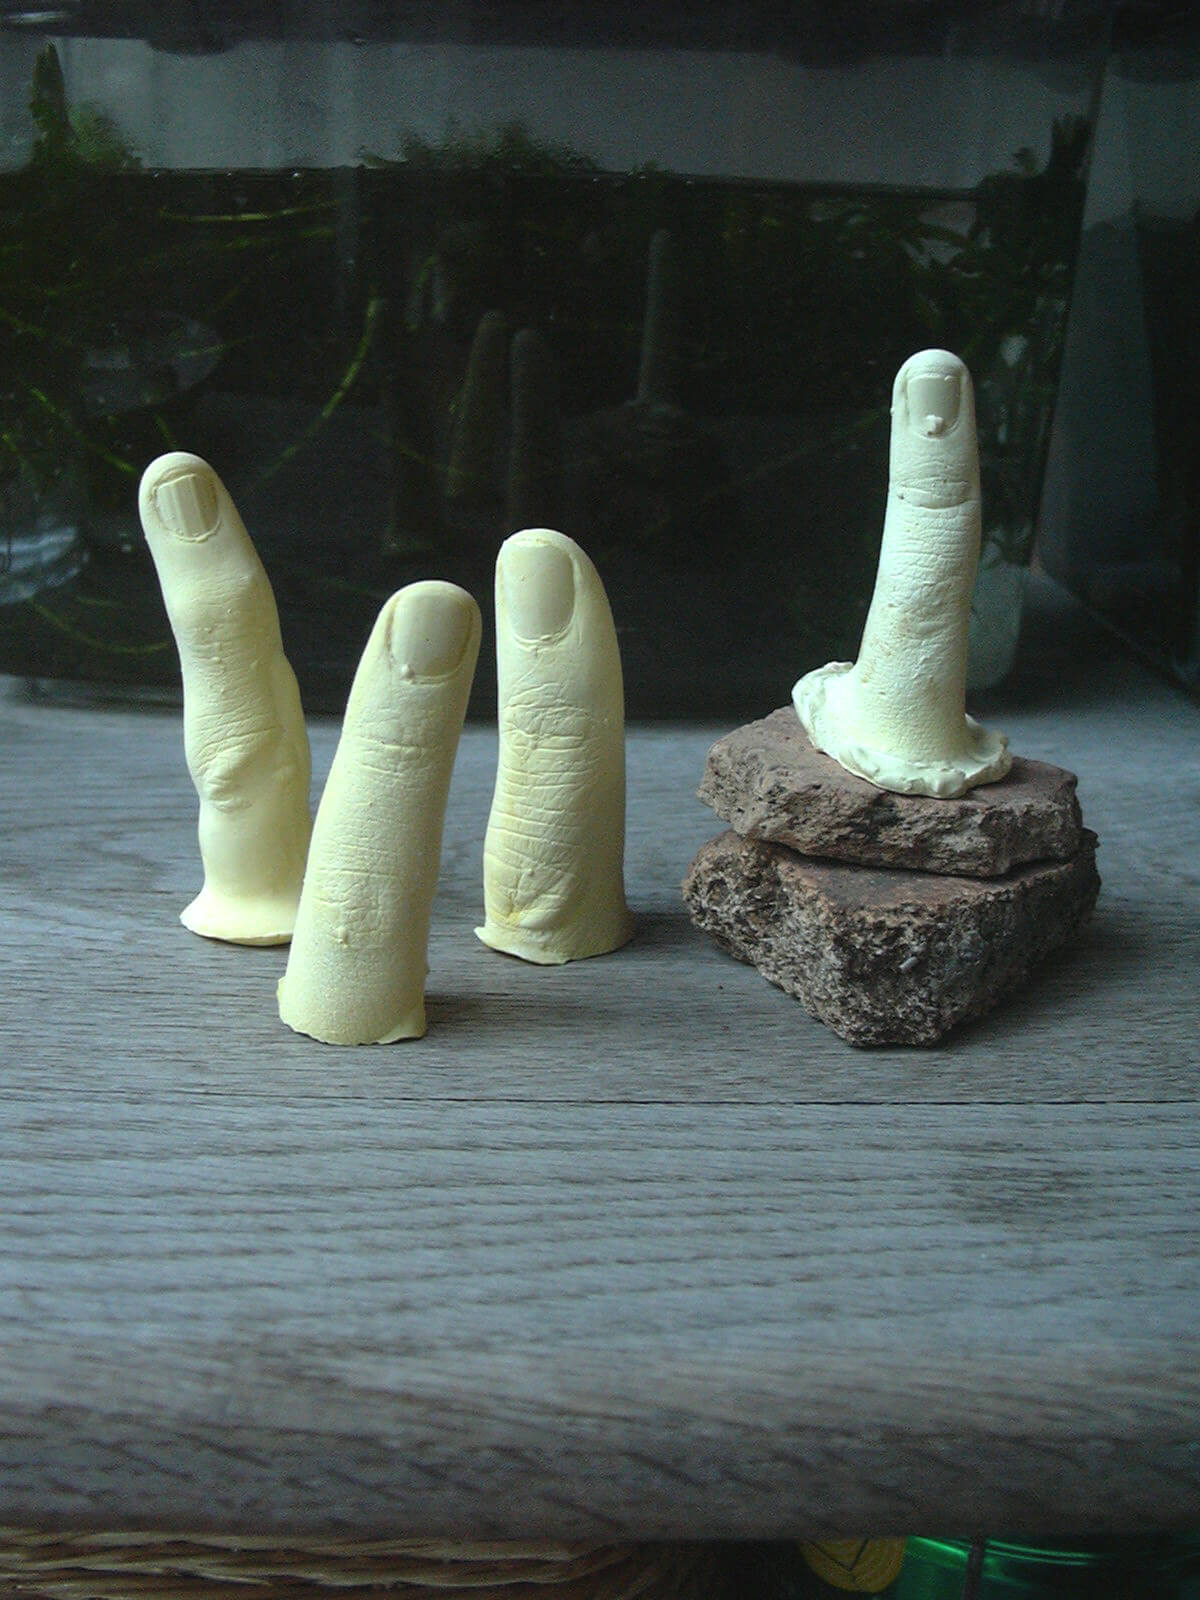 子供まつりのイベント内歯医者さんの「あなたの指作ります」コーナーで家族3人の小指を作り、去年作った子供の小指と合わせて4本になりました